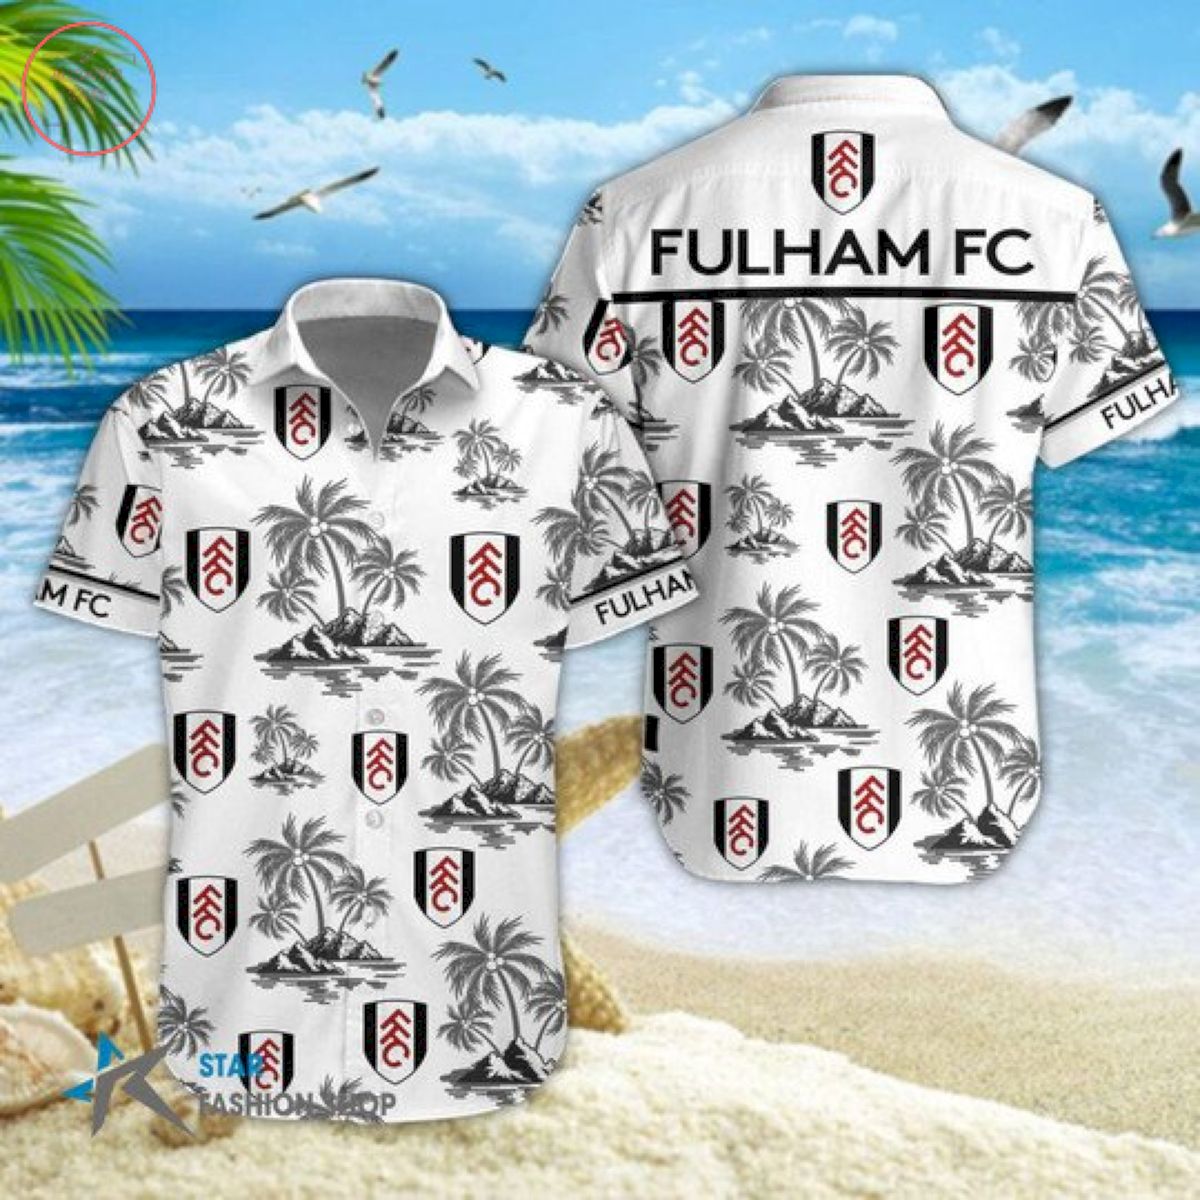 EPL Fulham Floral Hawaiian Shirts and Shorts